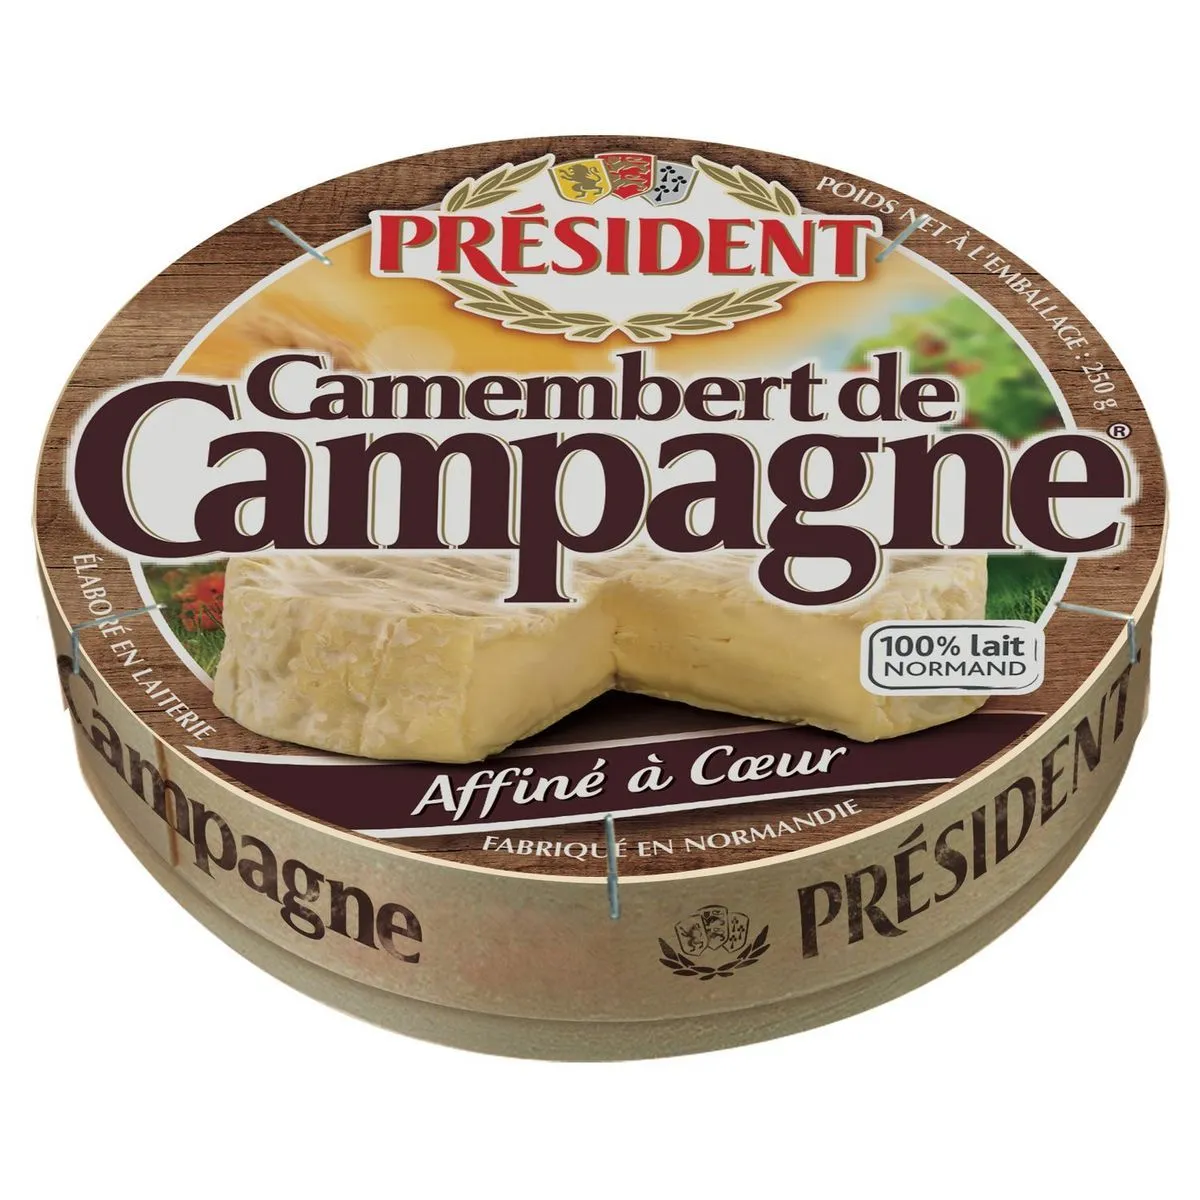 président camembert de campagne